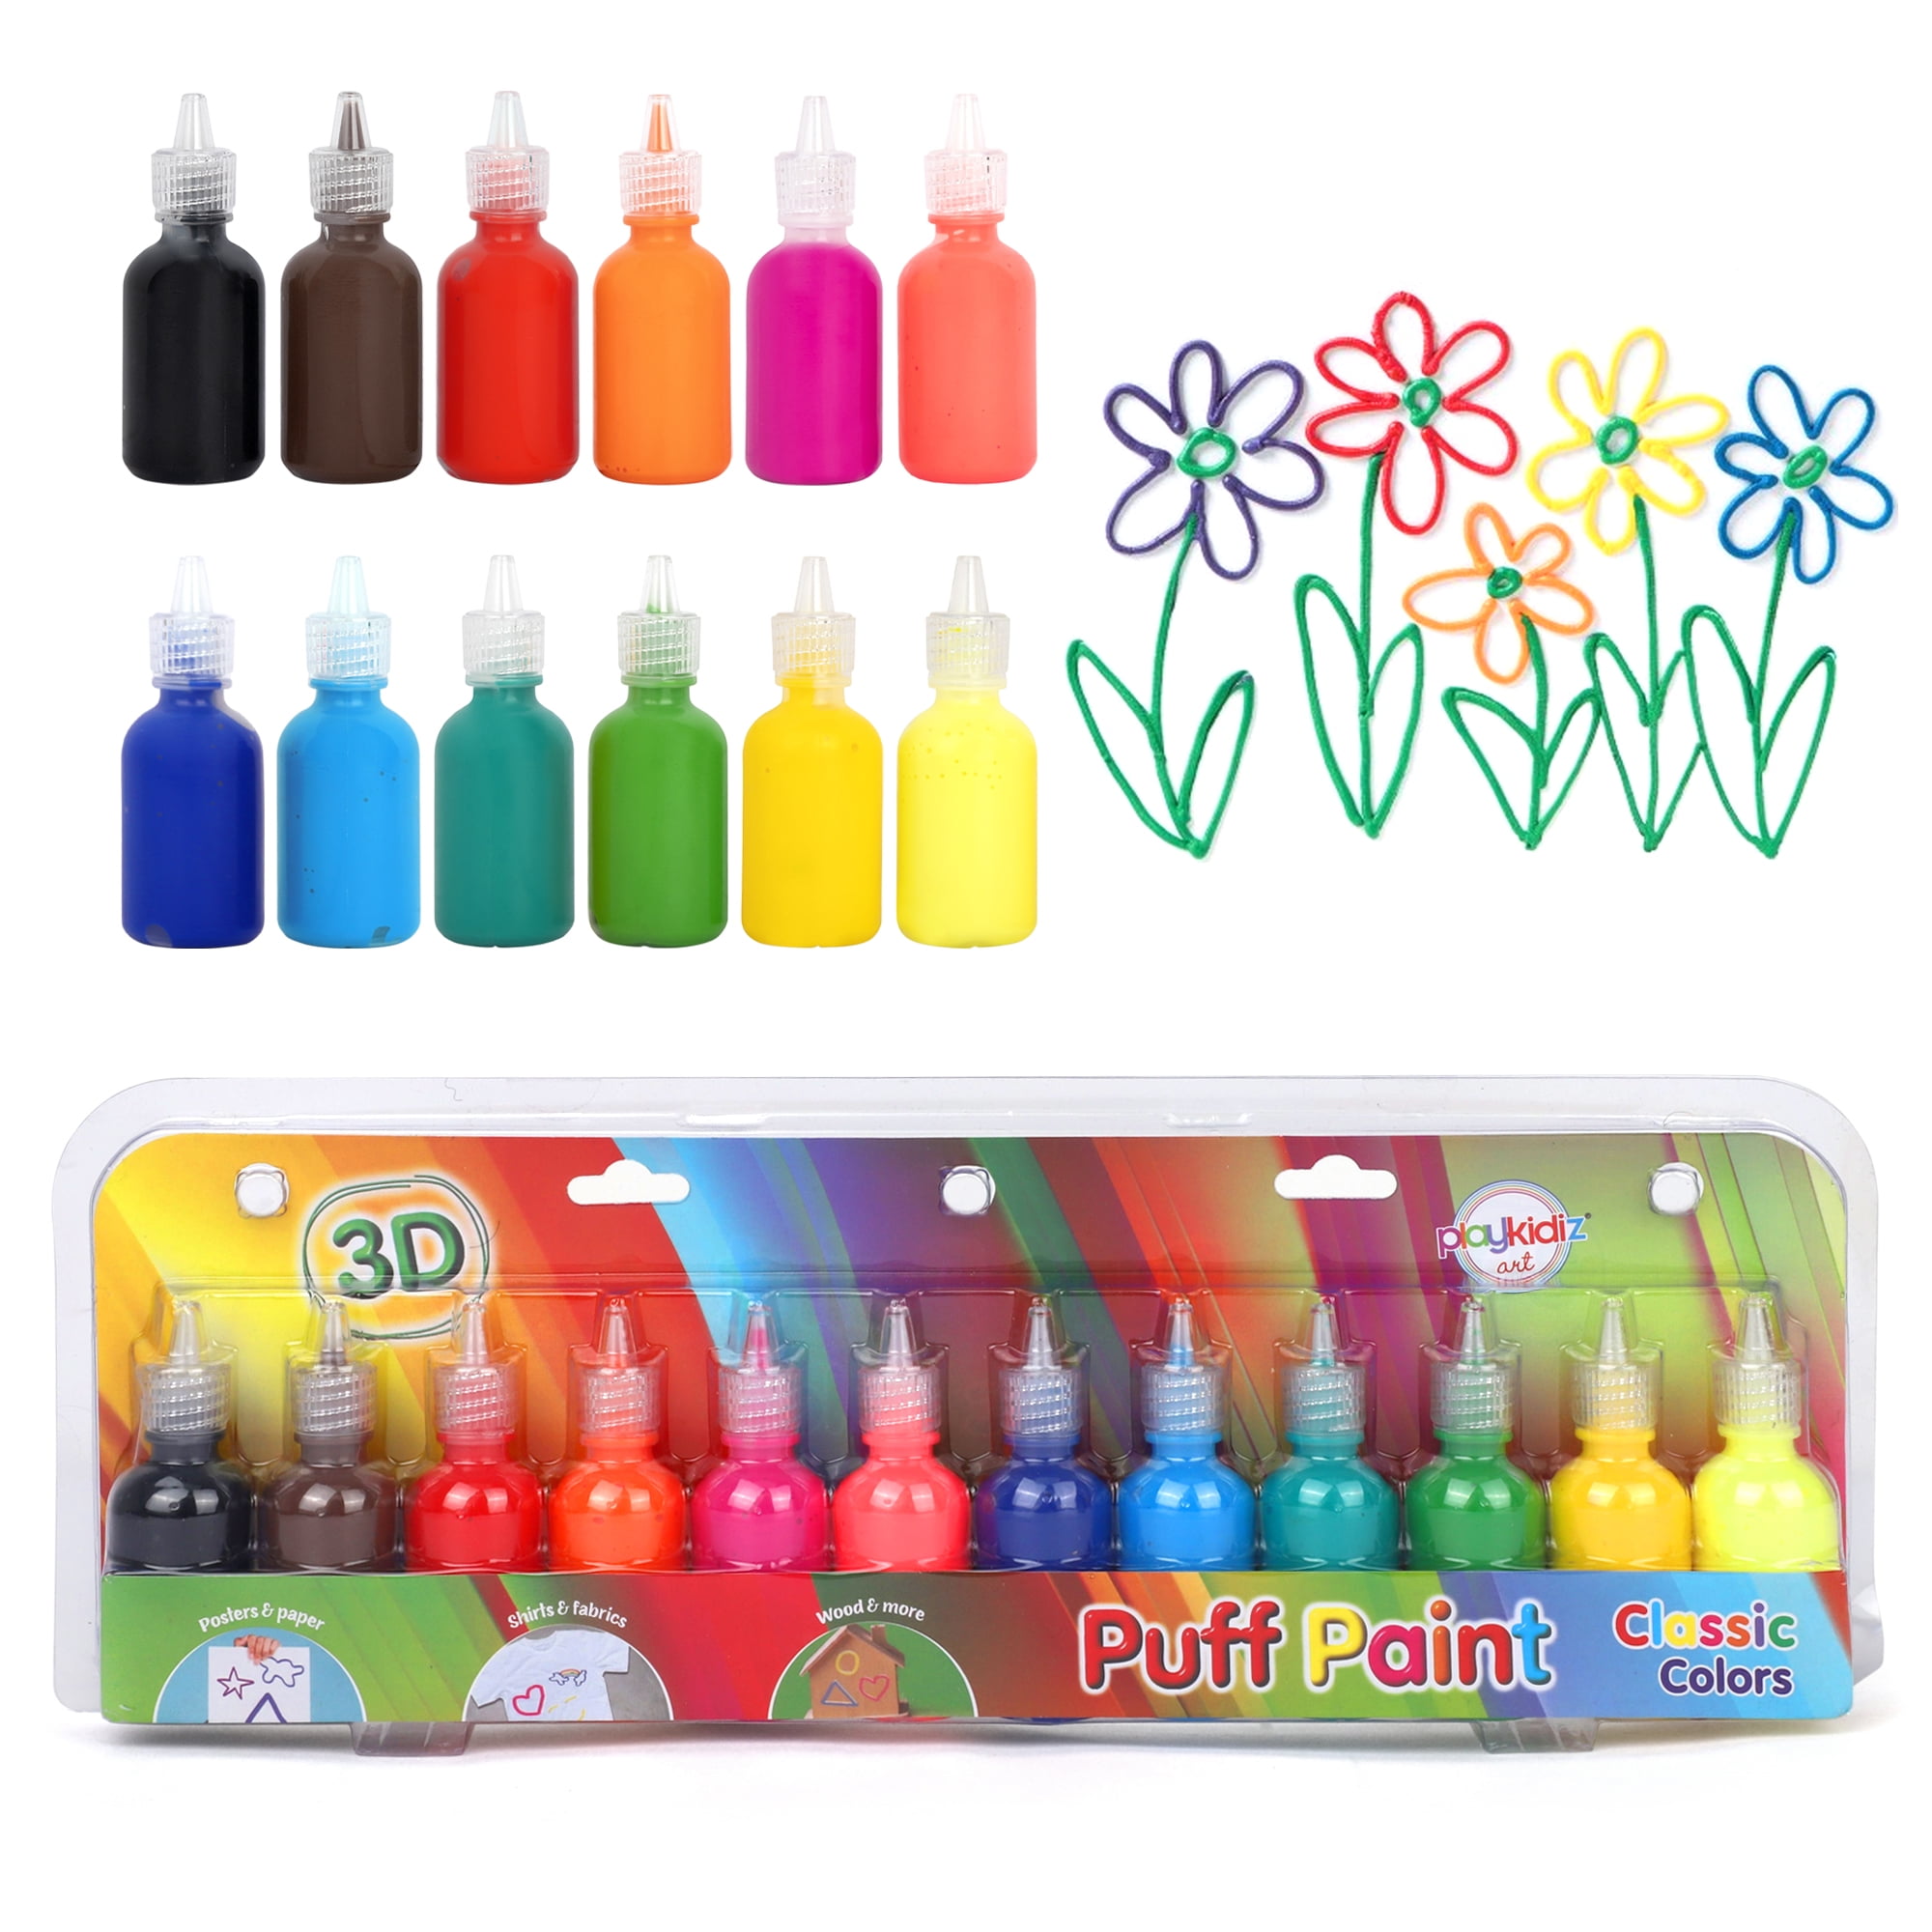 Playkidiz Puff Paint, 12 Pack 3-D Fabric Paint, Classic Colors, Non-Toxic Paint Set for Kids, Ages 3+